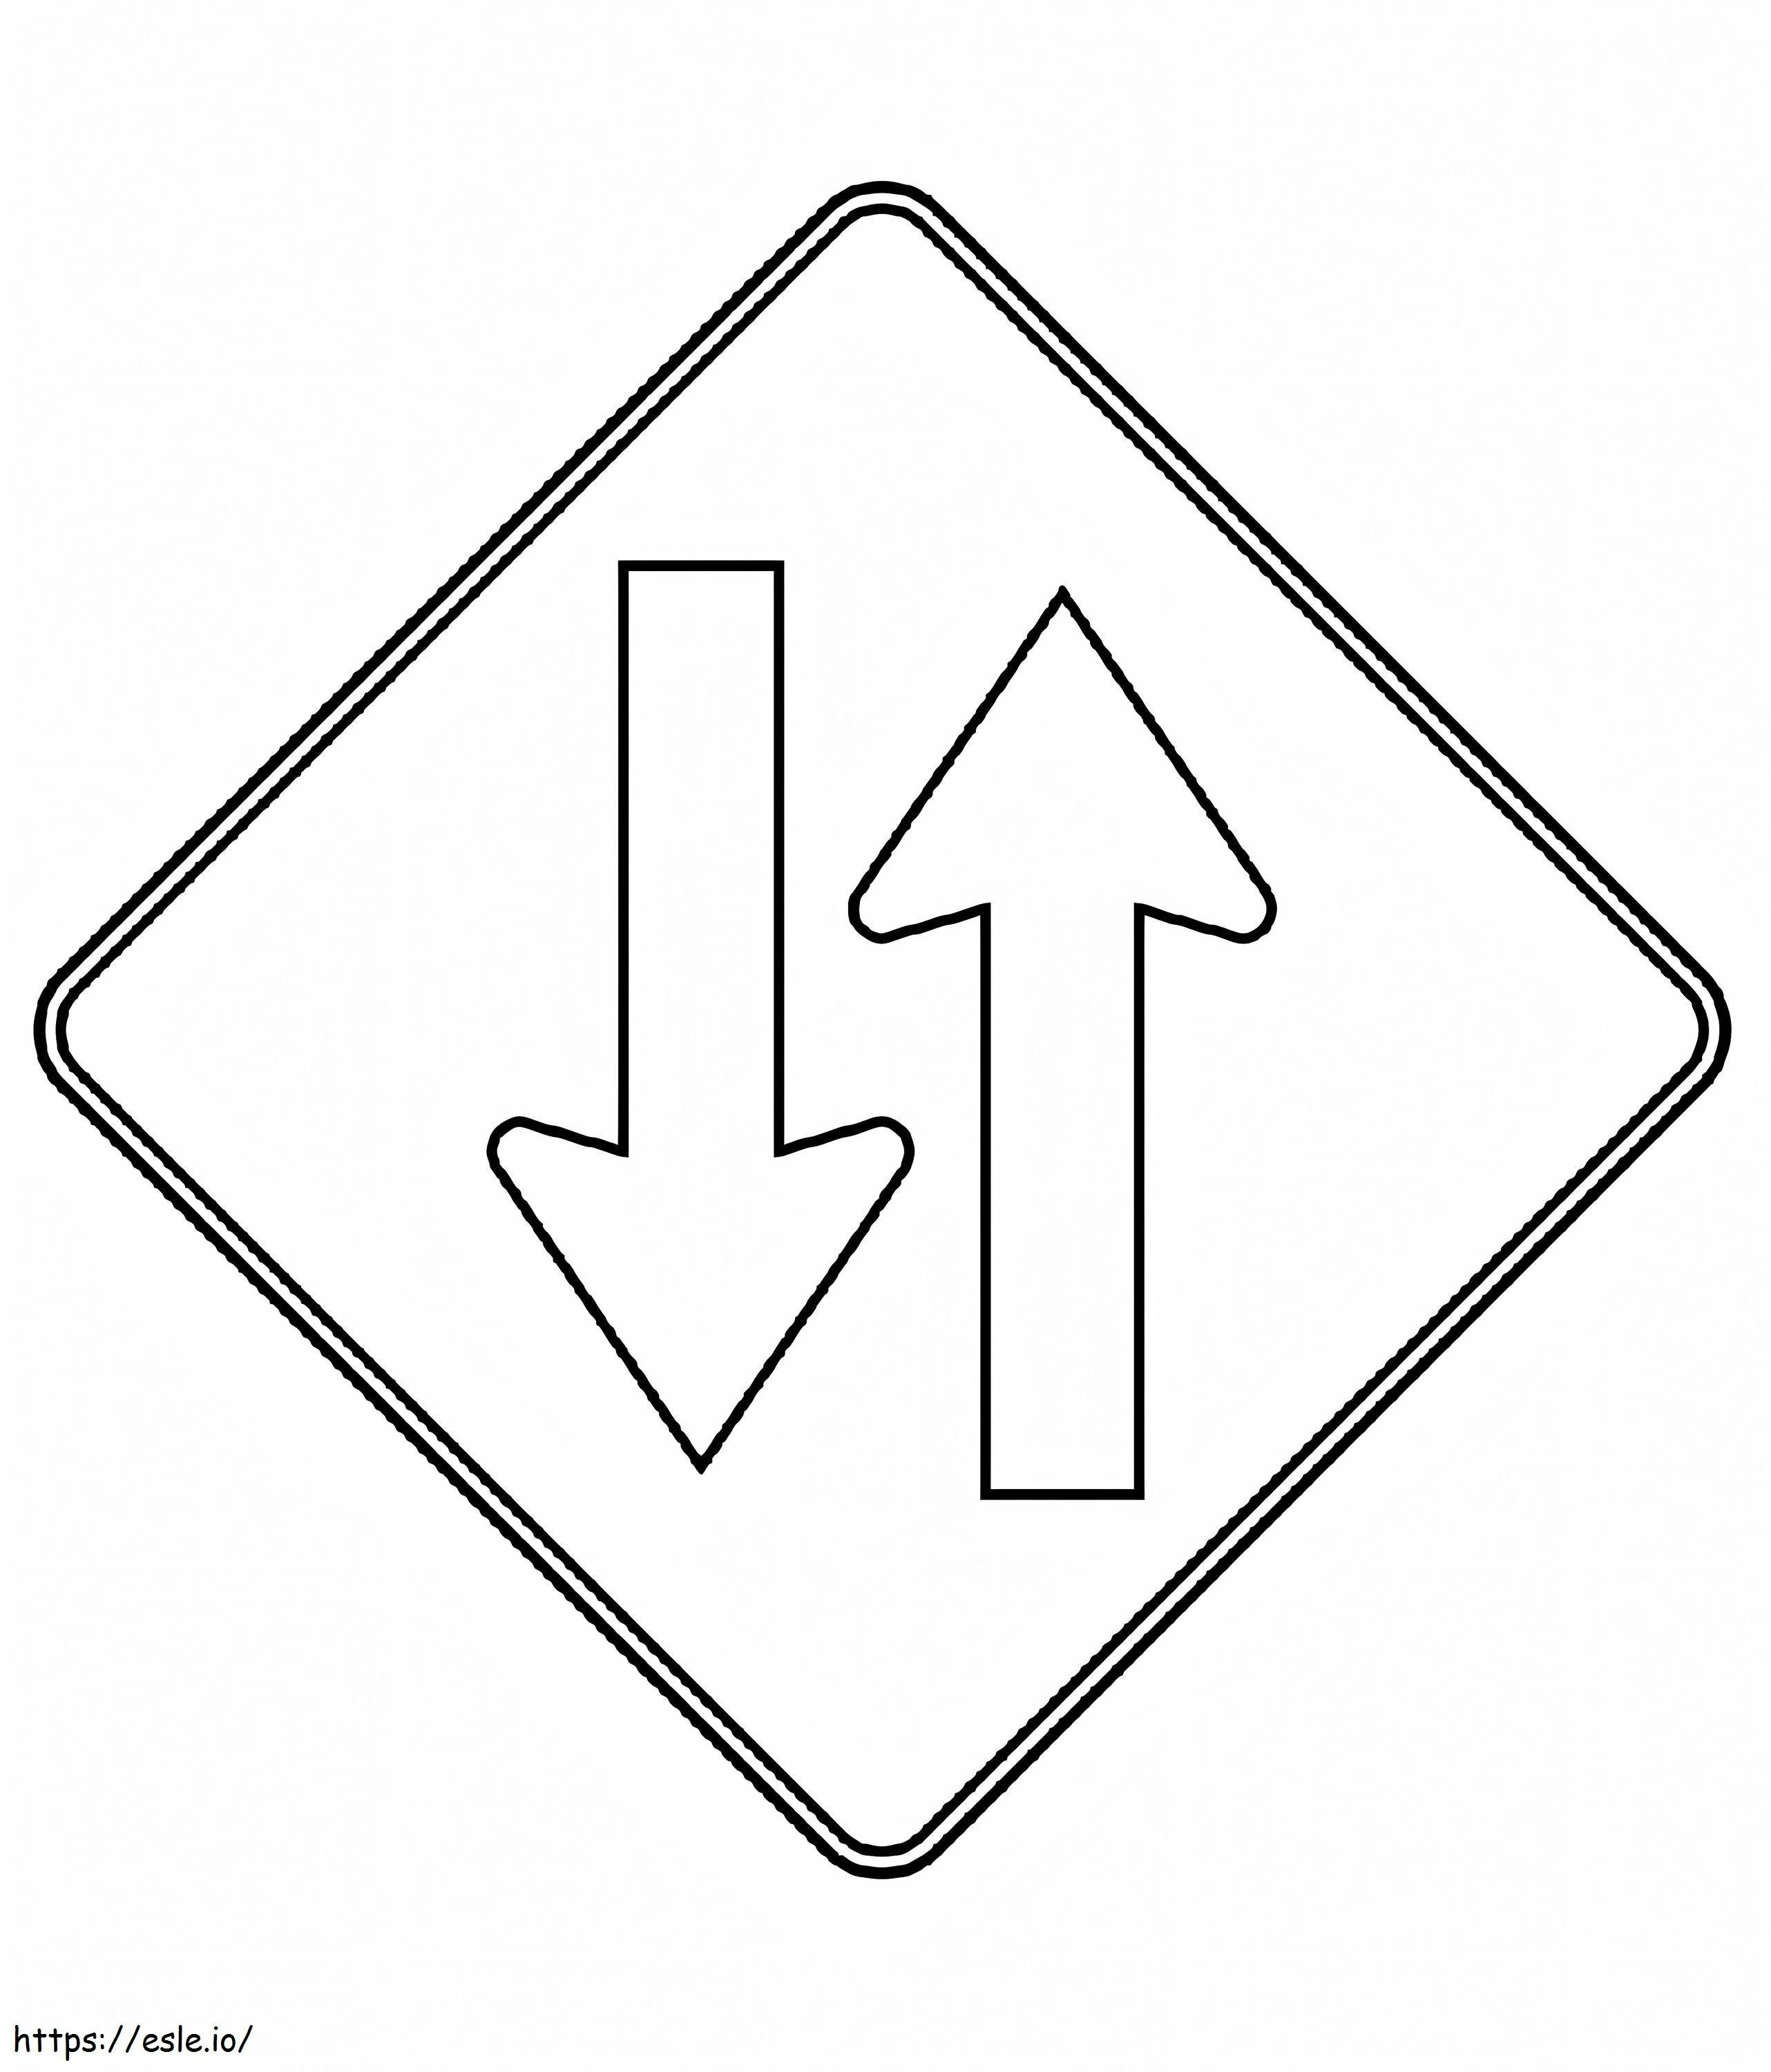 Zwei-Wege-Verkehrszeichen ausmalbilder